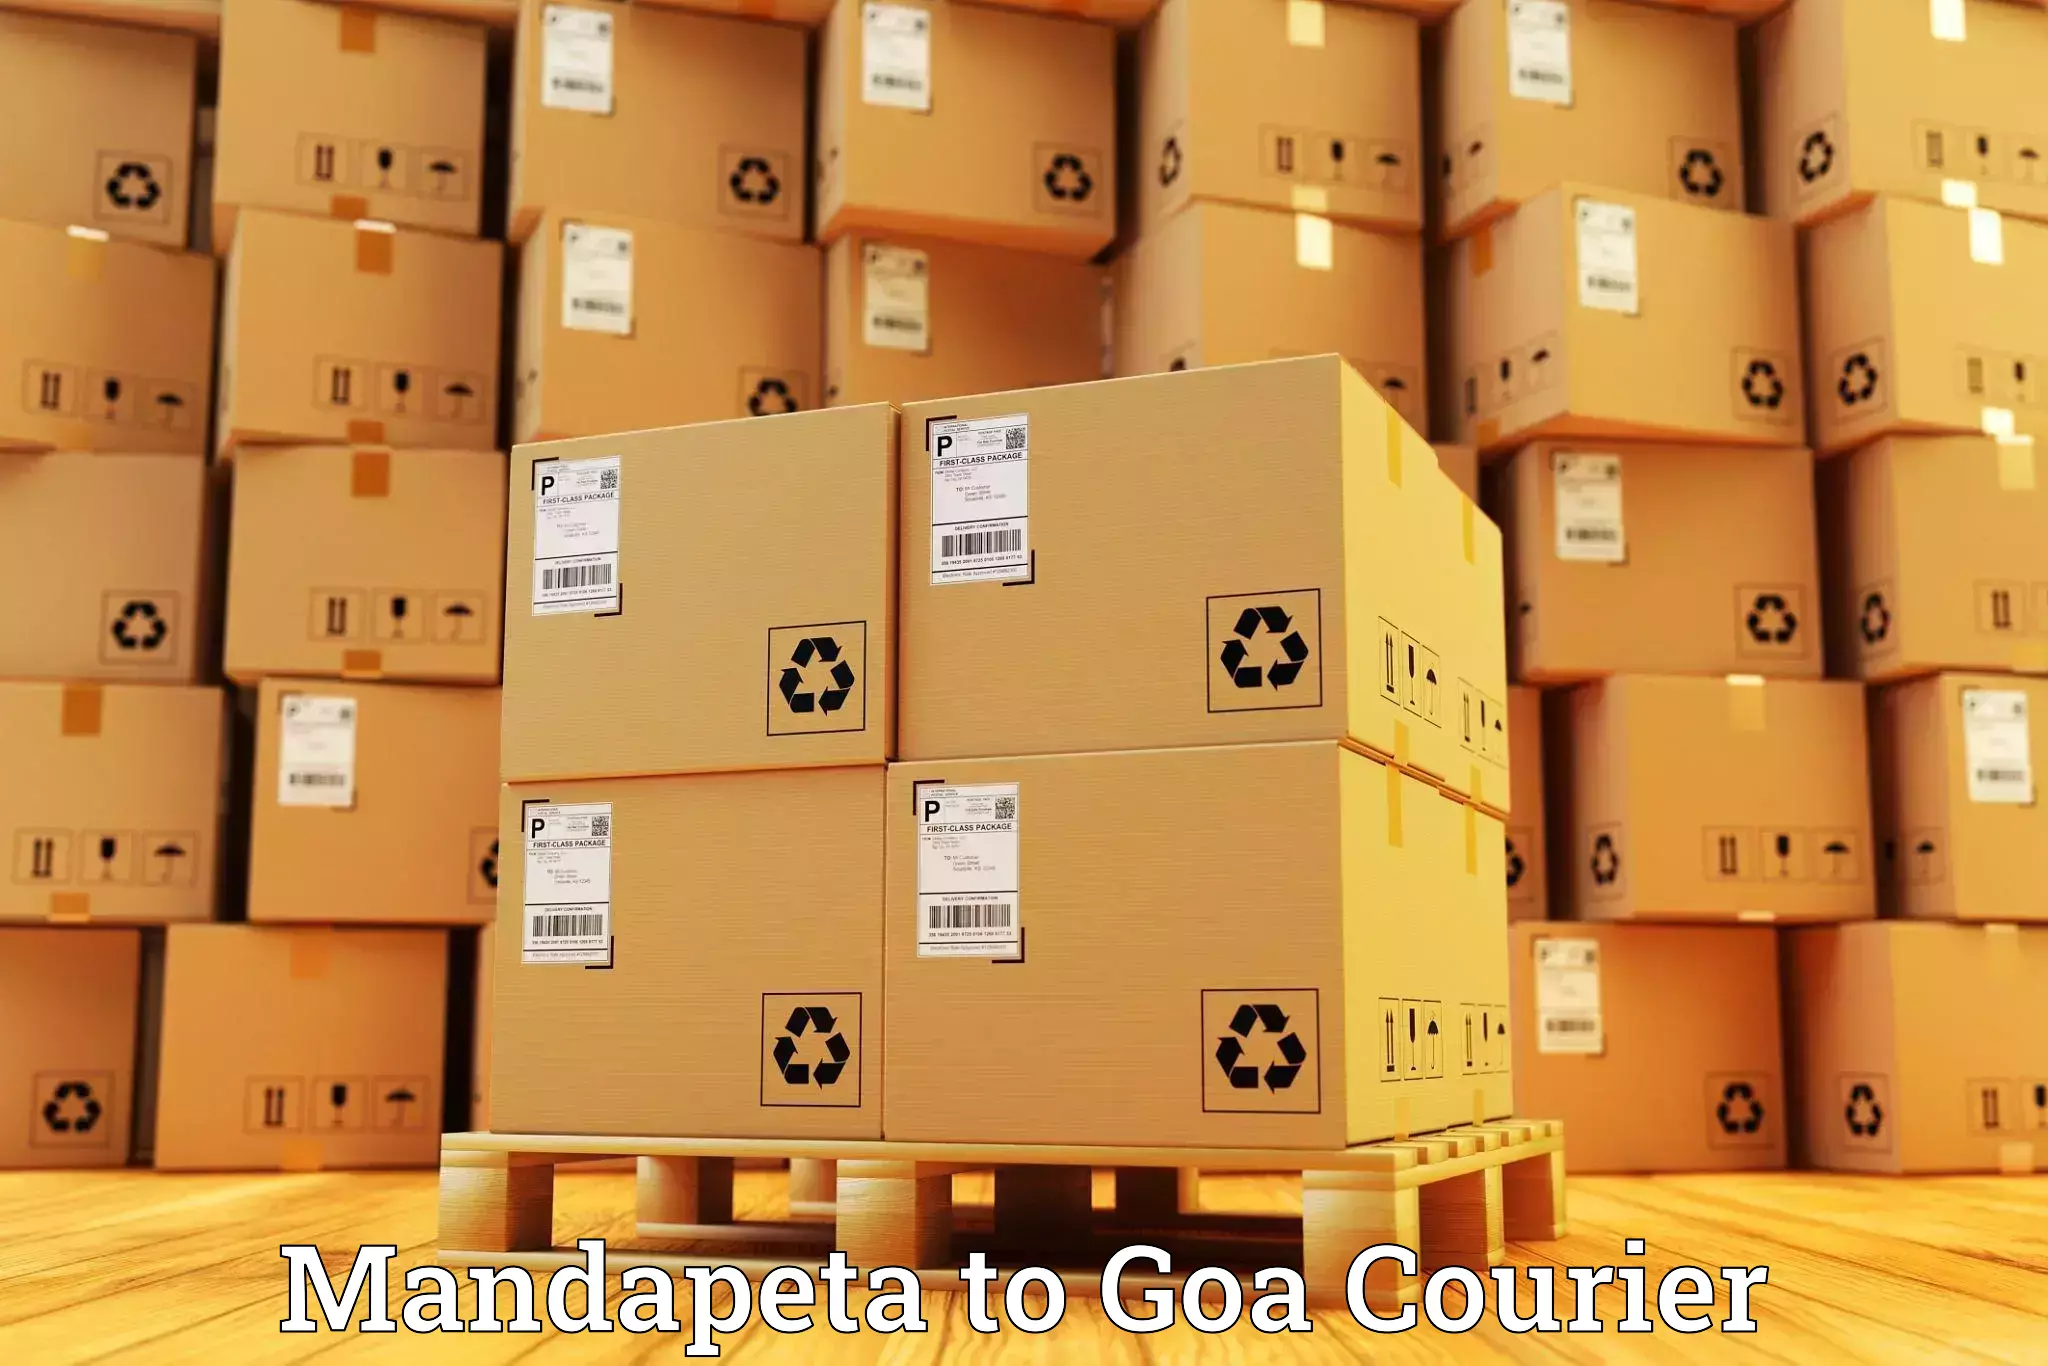 Premium courier solutions Mandapeta to South Goa